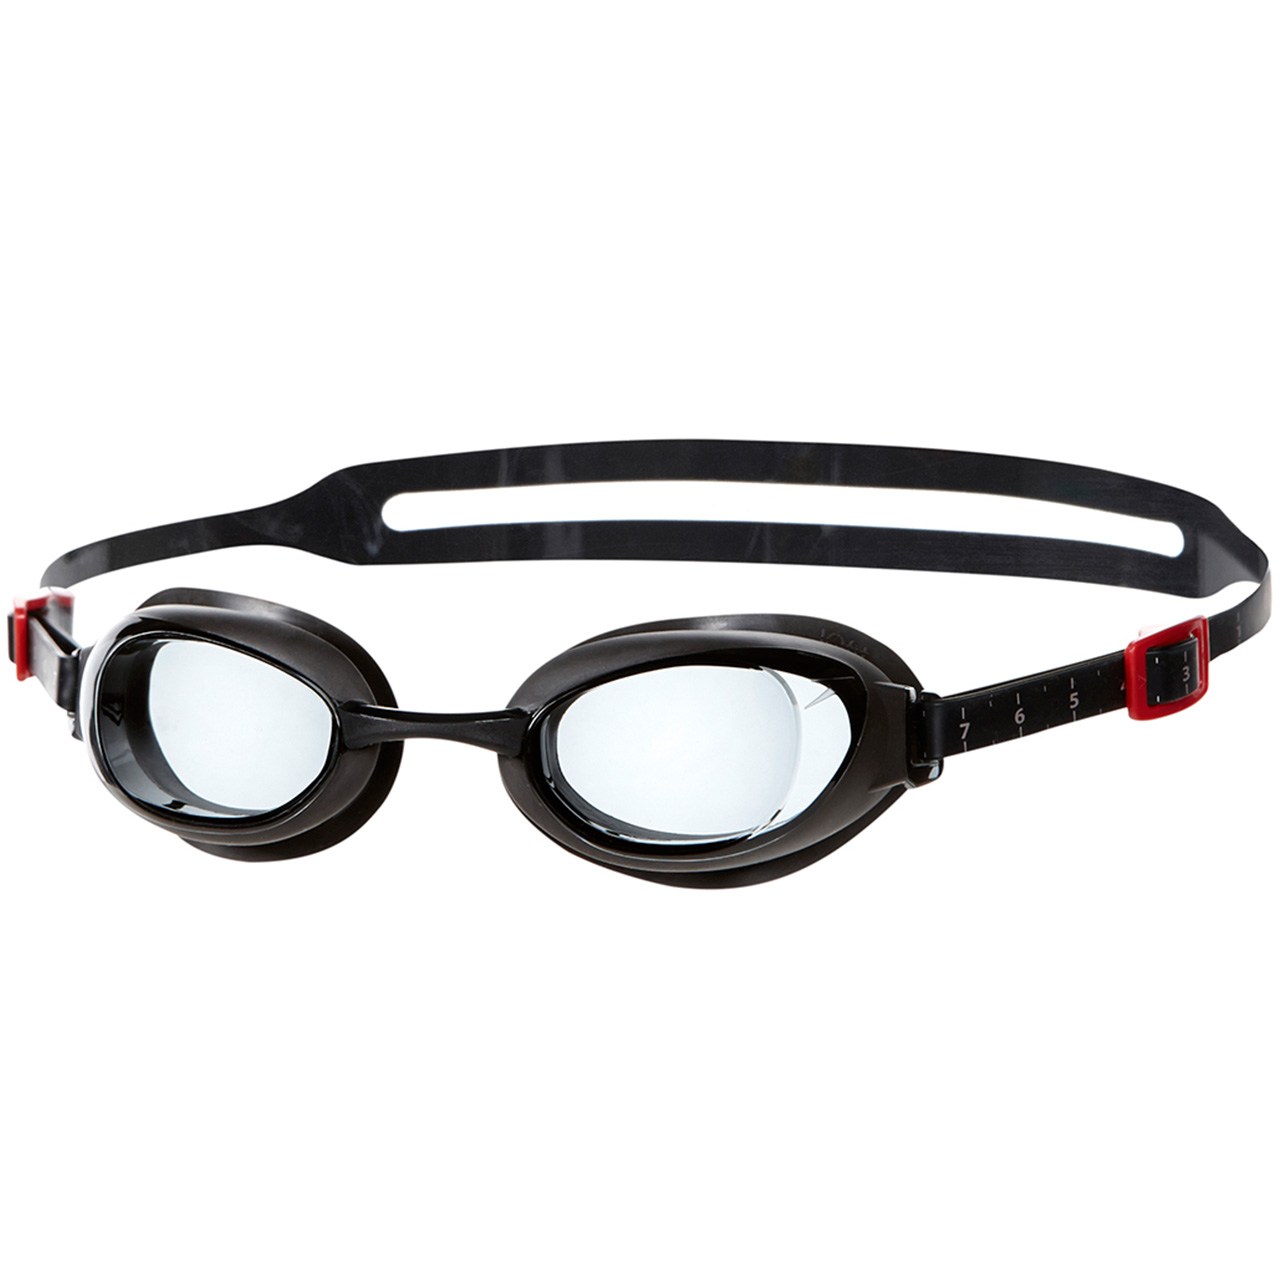 عینک شنای اسپیدو مدل Aquapure Prescription سایز 2.5